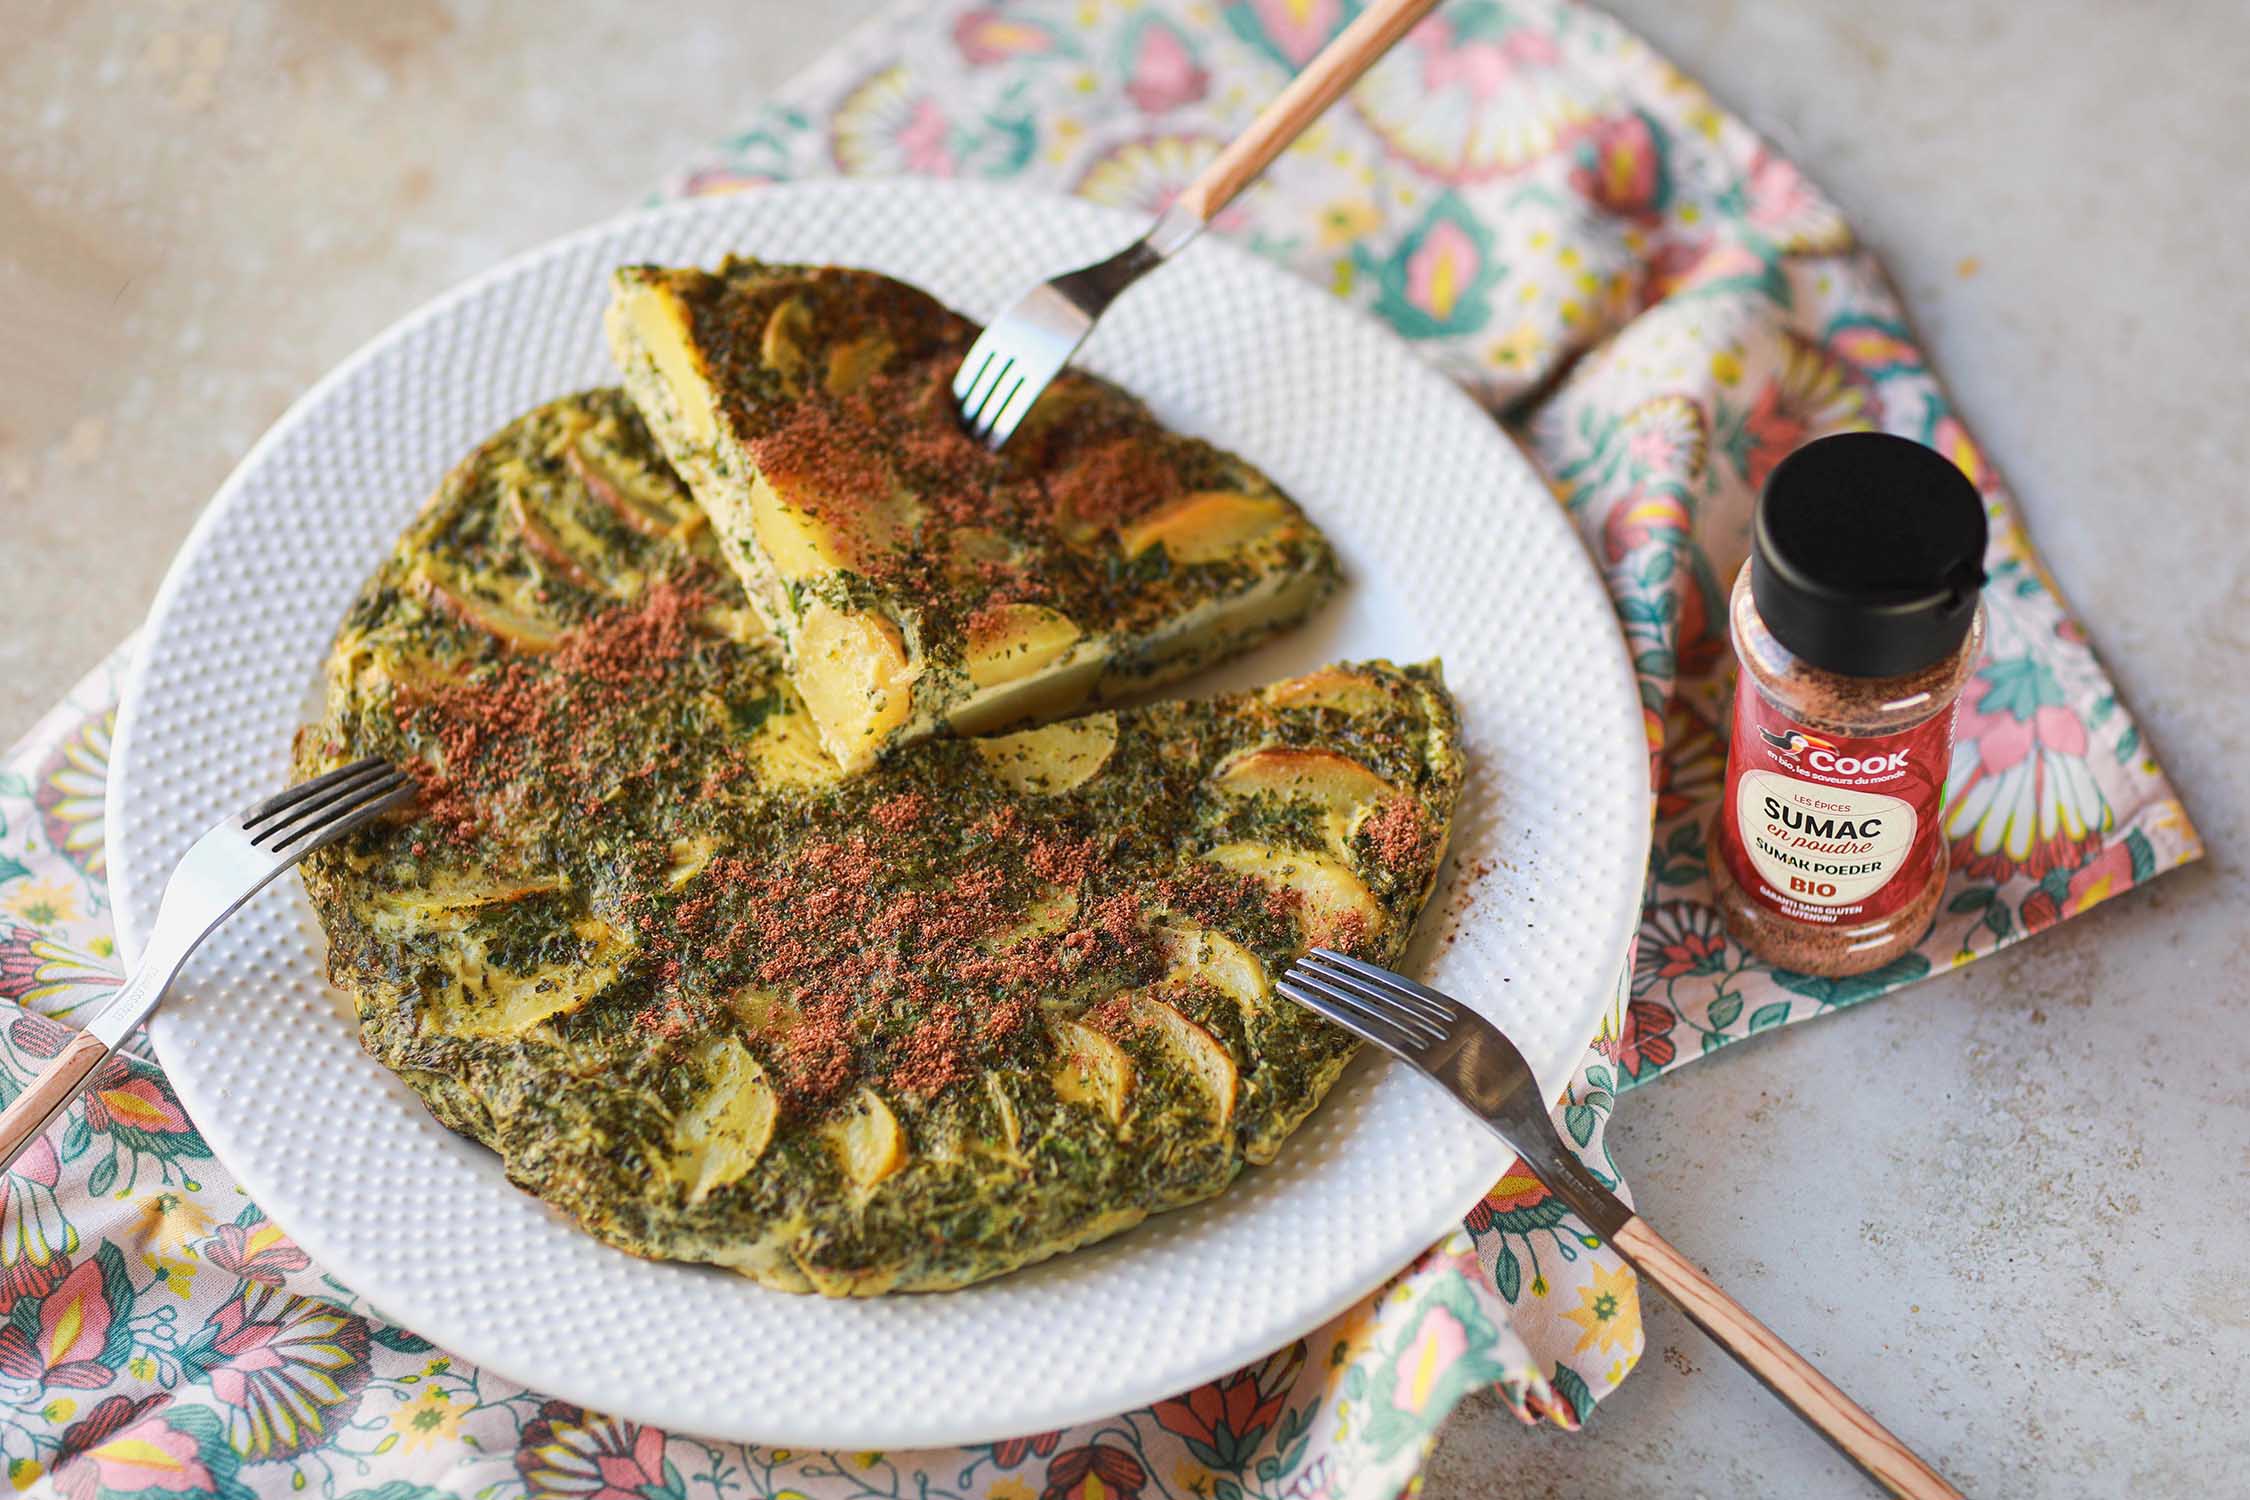 Recette bio à tester : omelette italienne aux herbes et au sumac